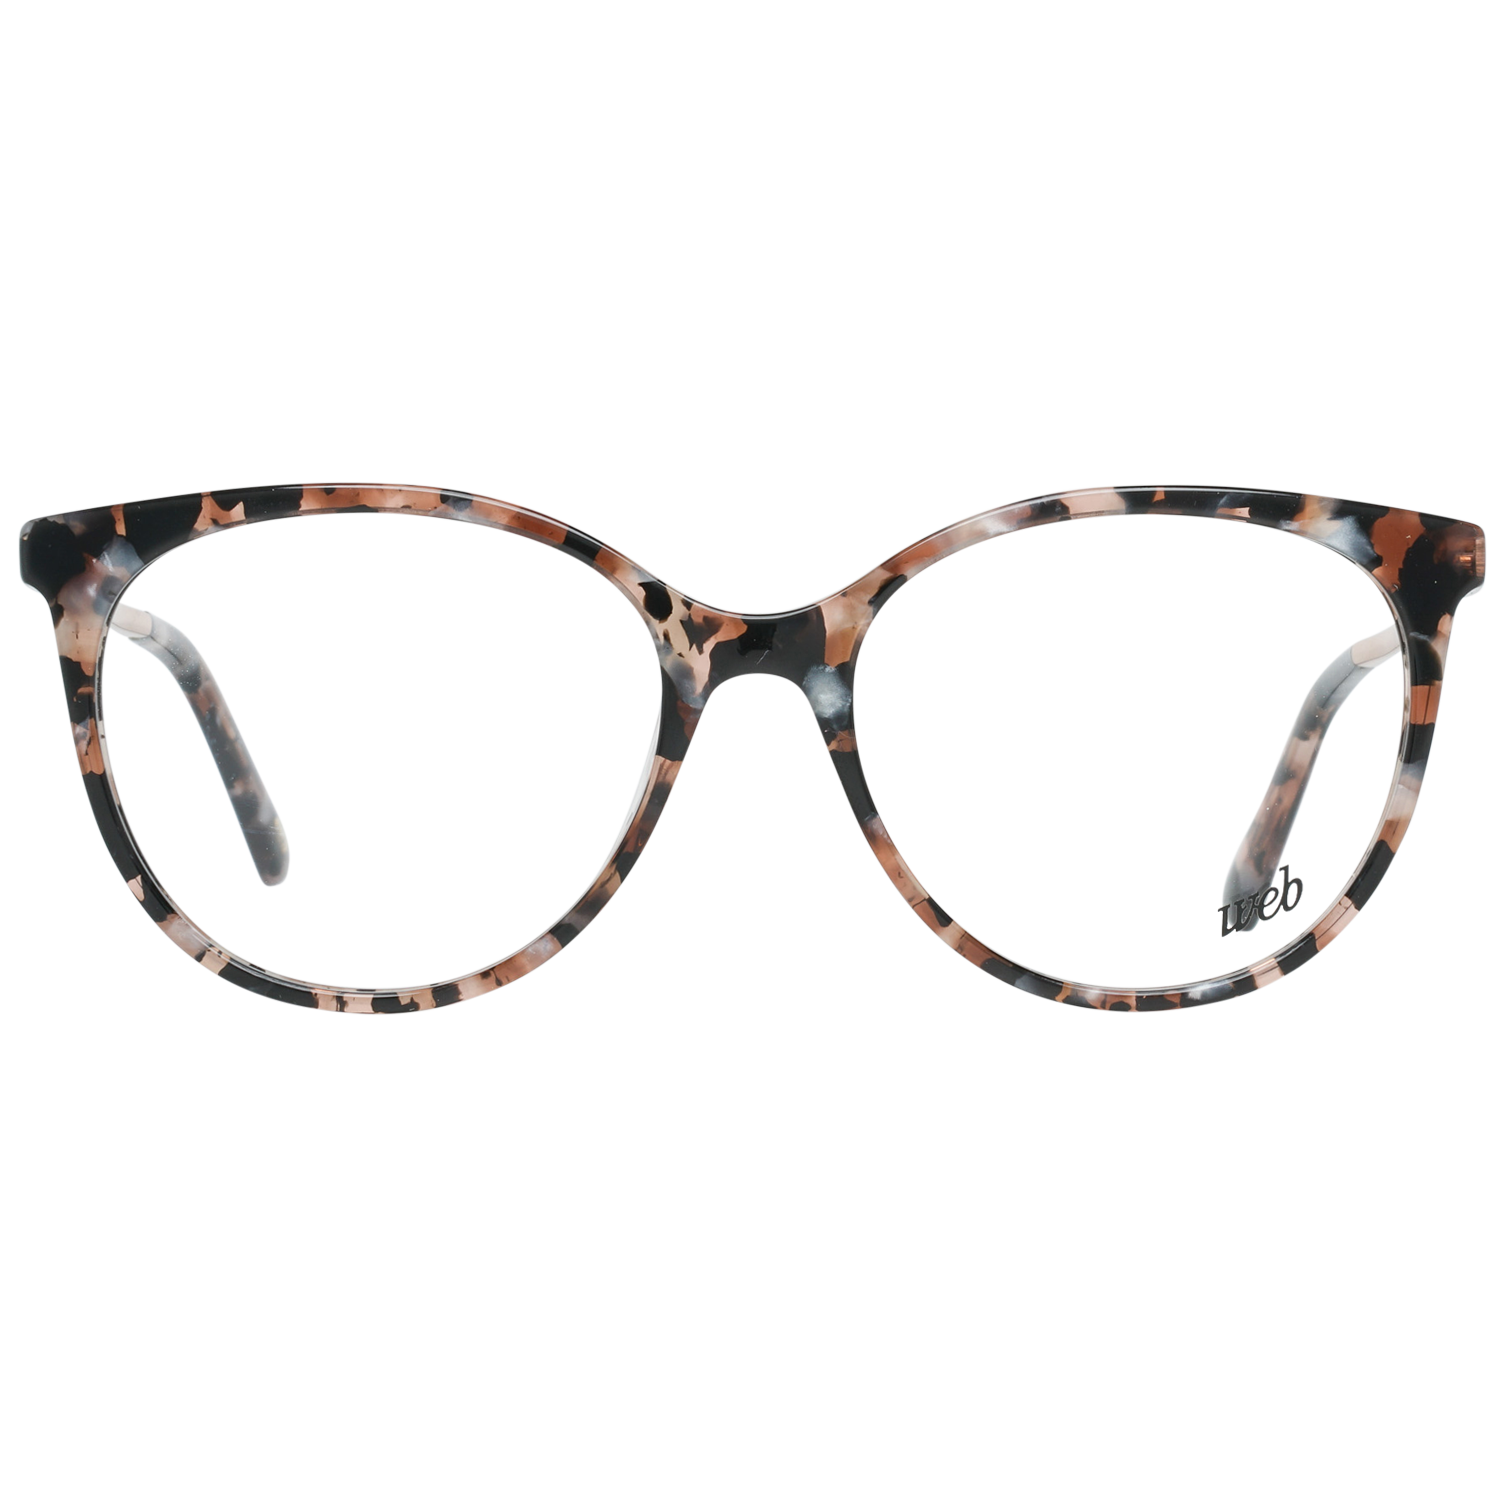 Web Frames Web Glasses Optical Frame WE5238 074 52 Eyeglasses Eyewear UK USA Australia 